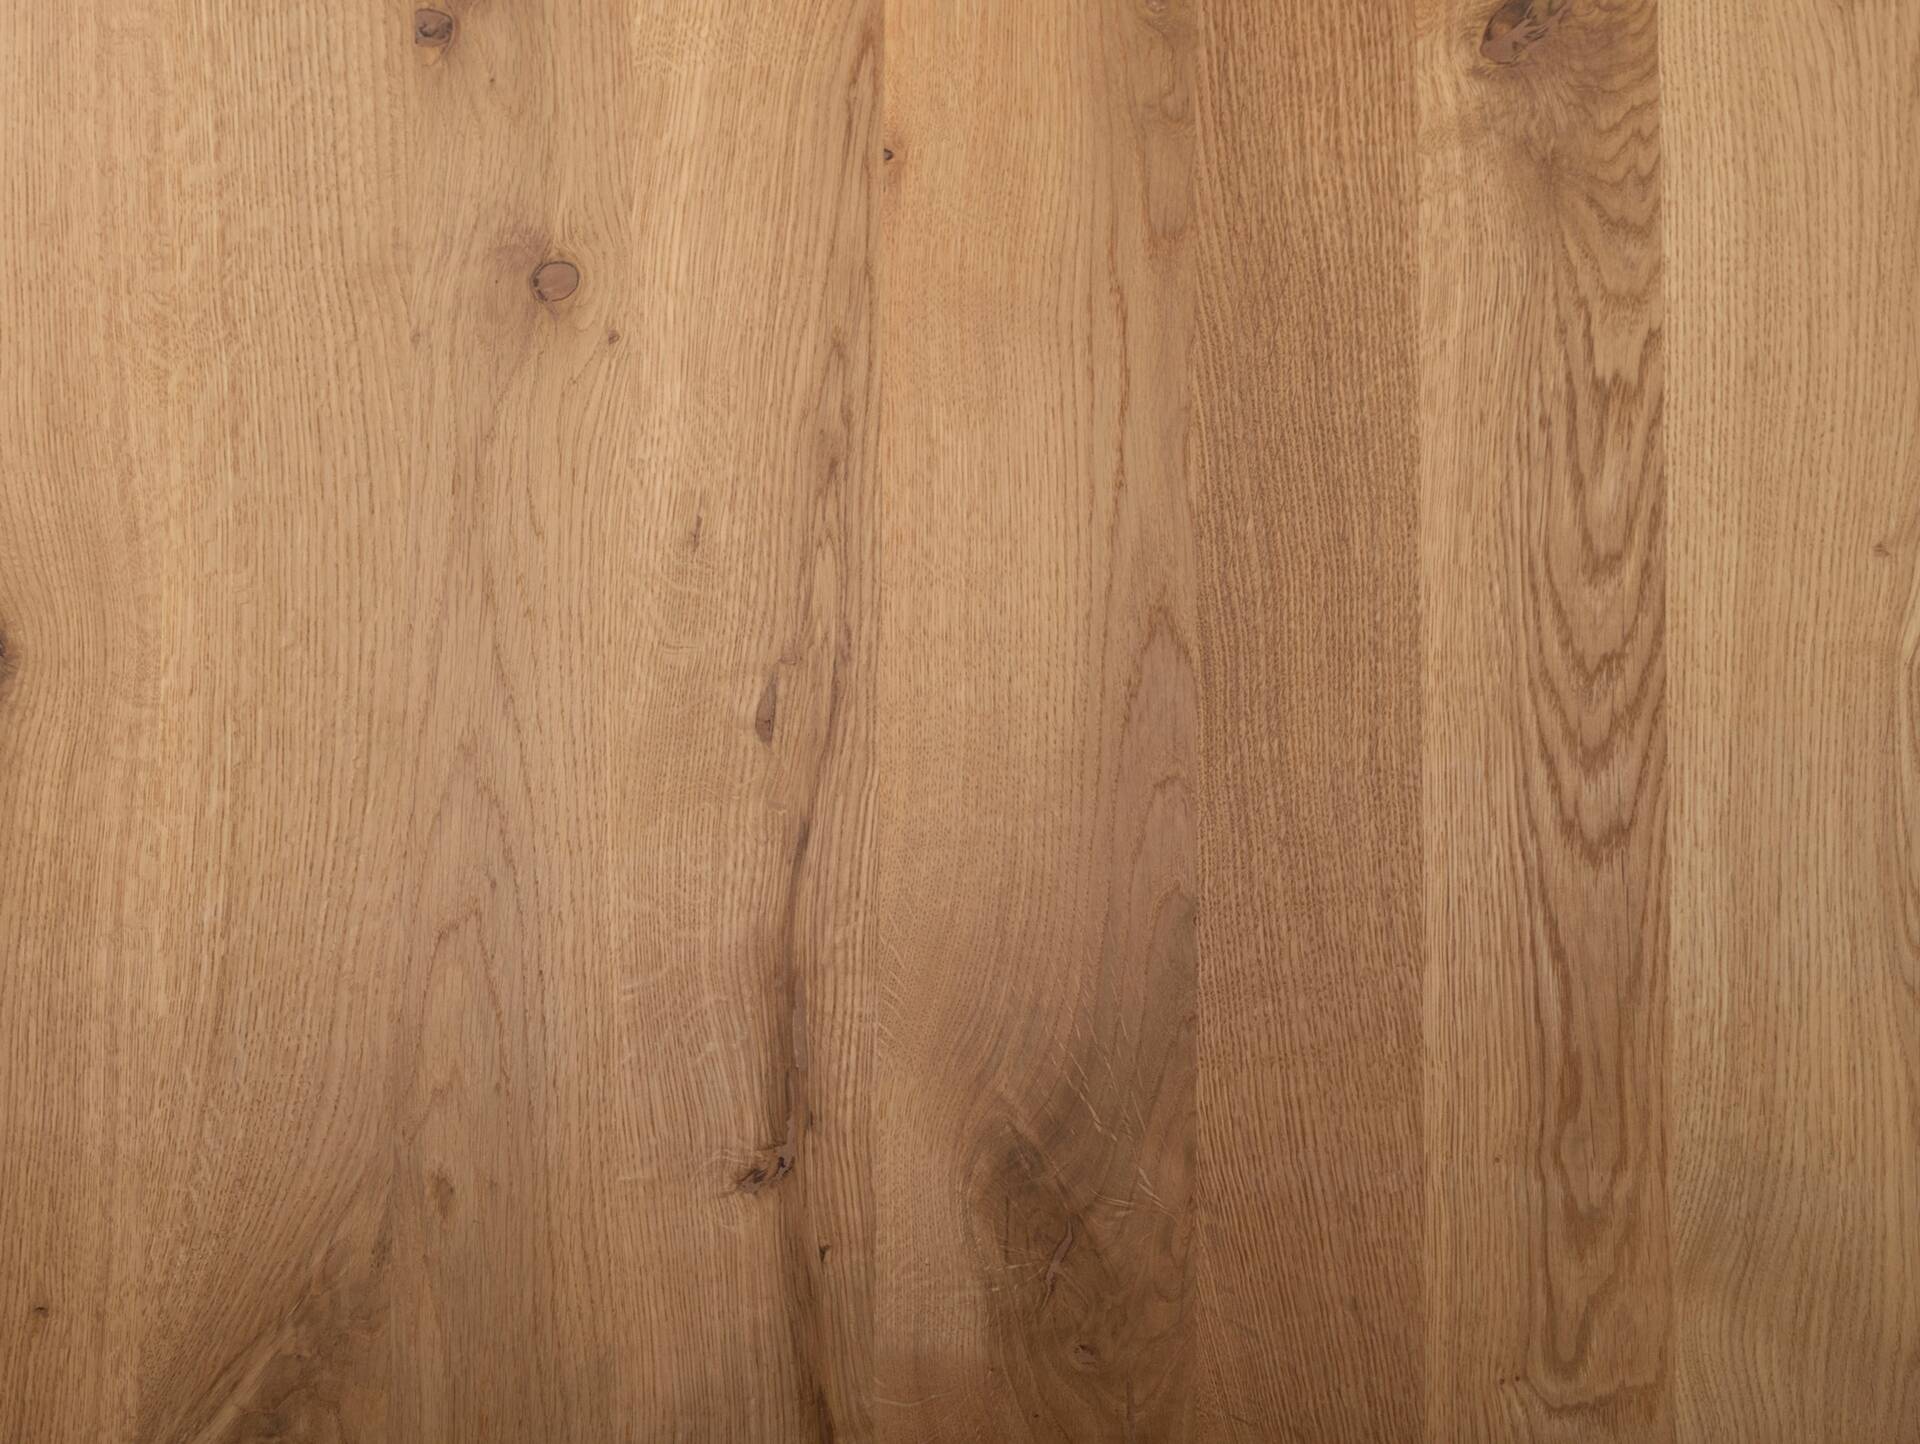 COLORADO Massivholztisch mit X-Beinen, Material Massivholz, Eiche 200 x 100 cm